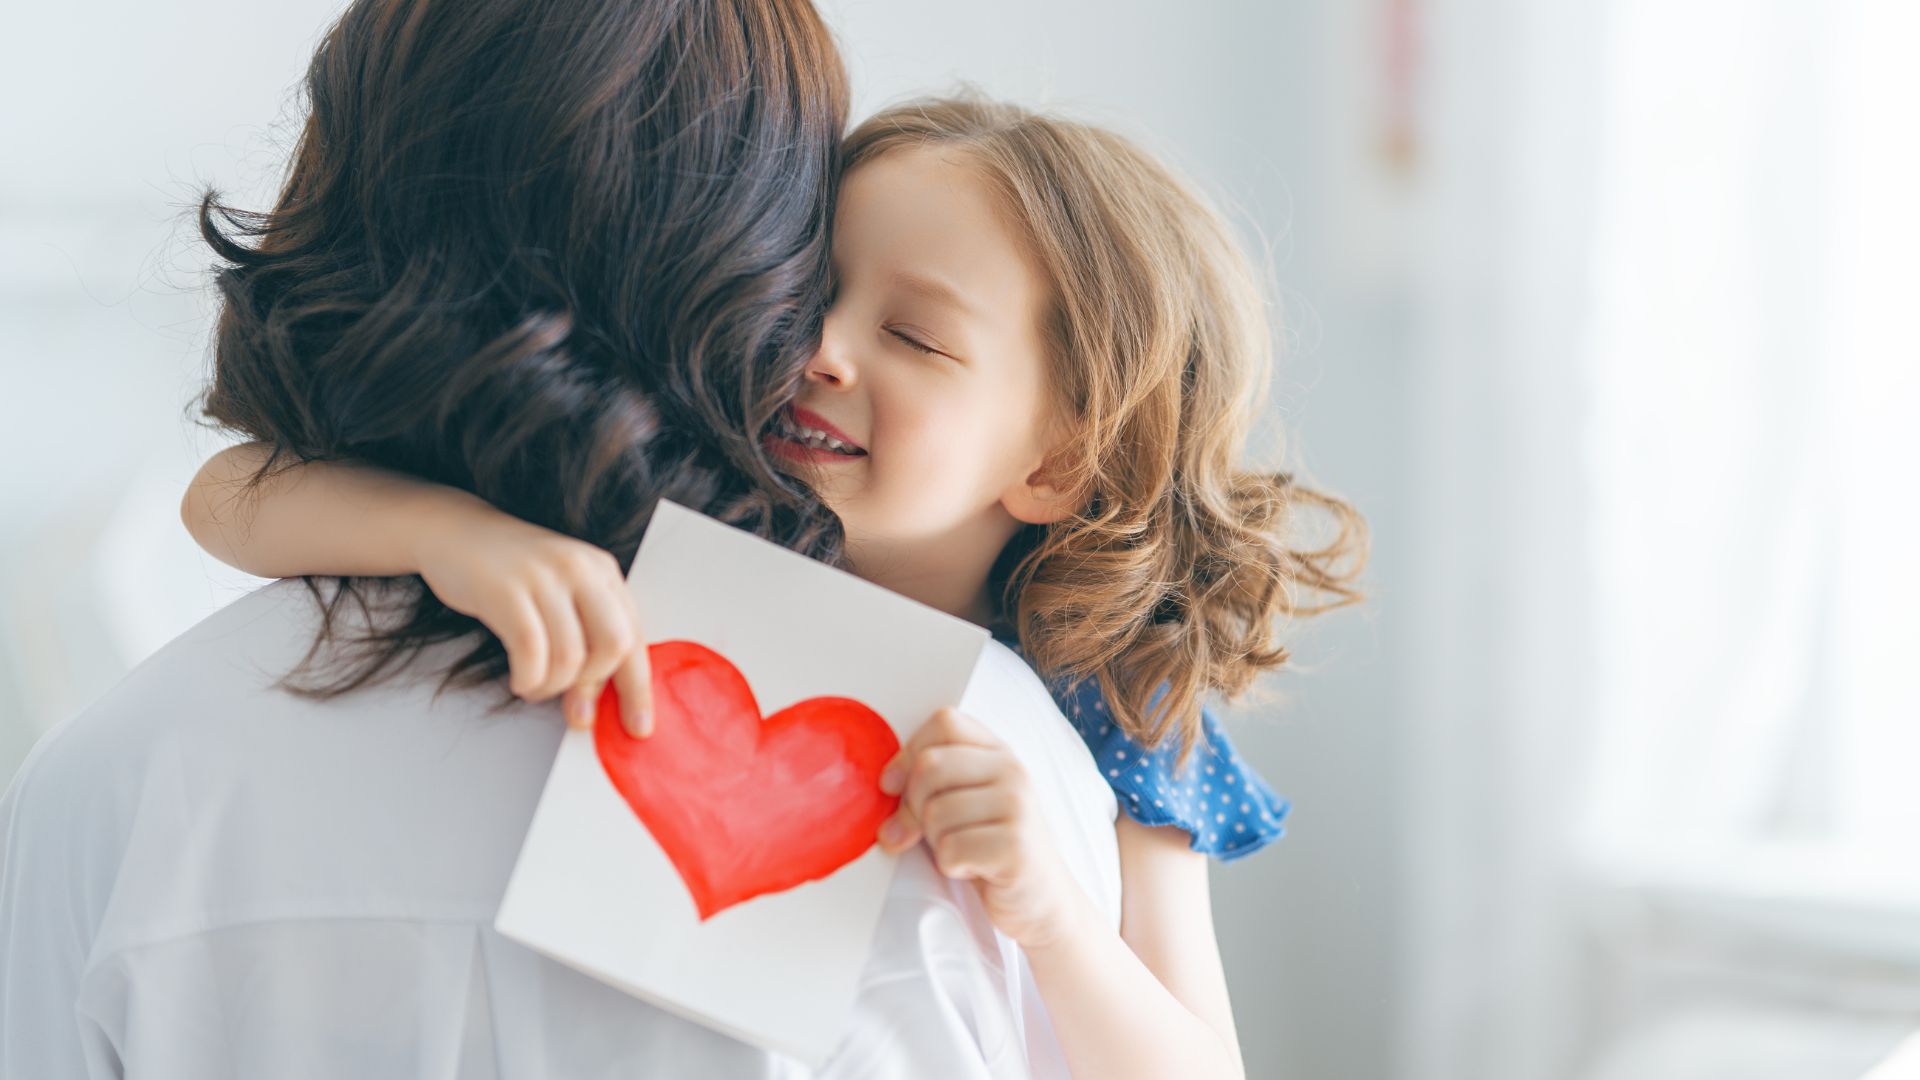 Imagem de uma mãe usando uma camisa branca abrançando a sua filha qe segura uma cartinha com um coração desenhando.